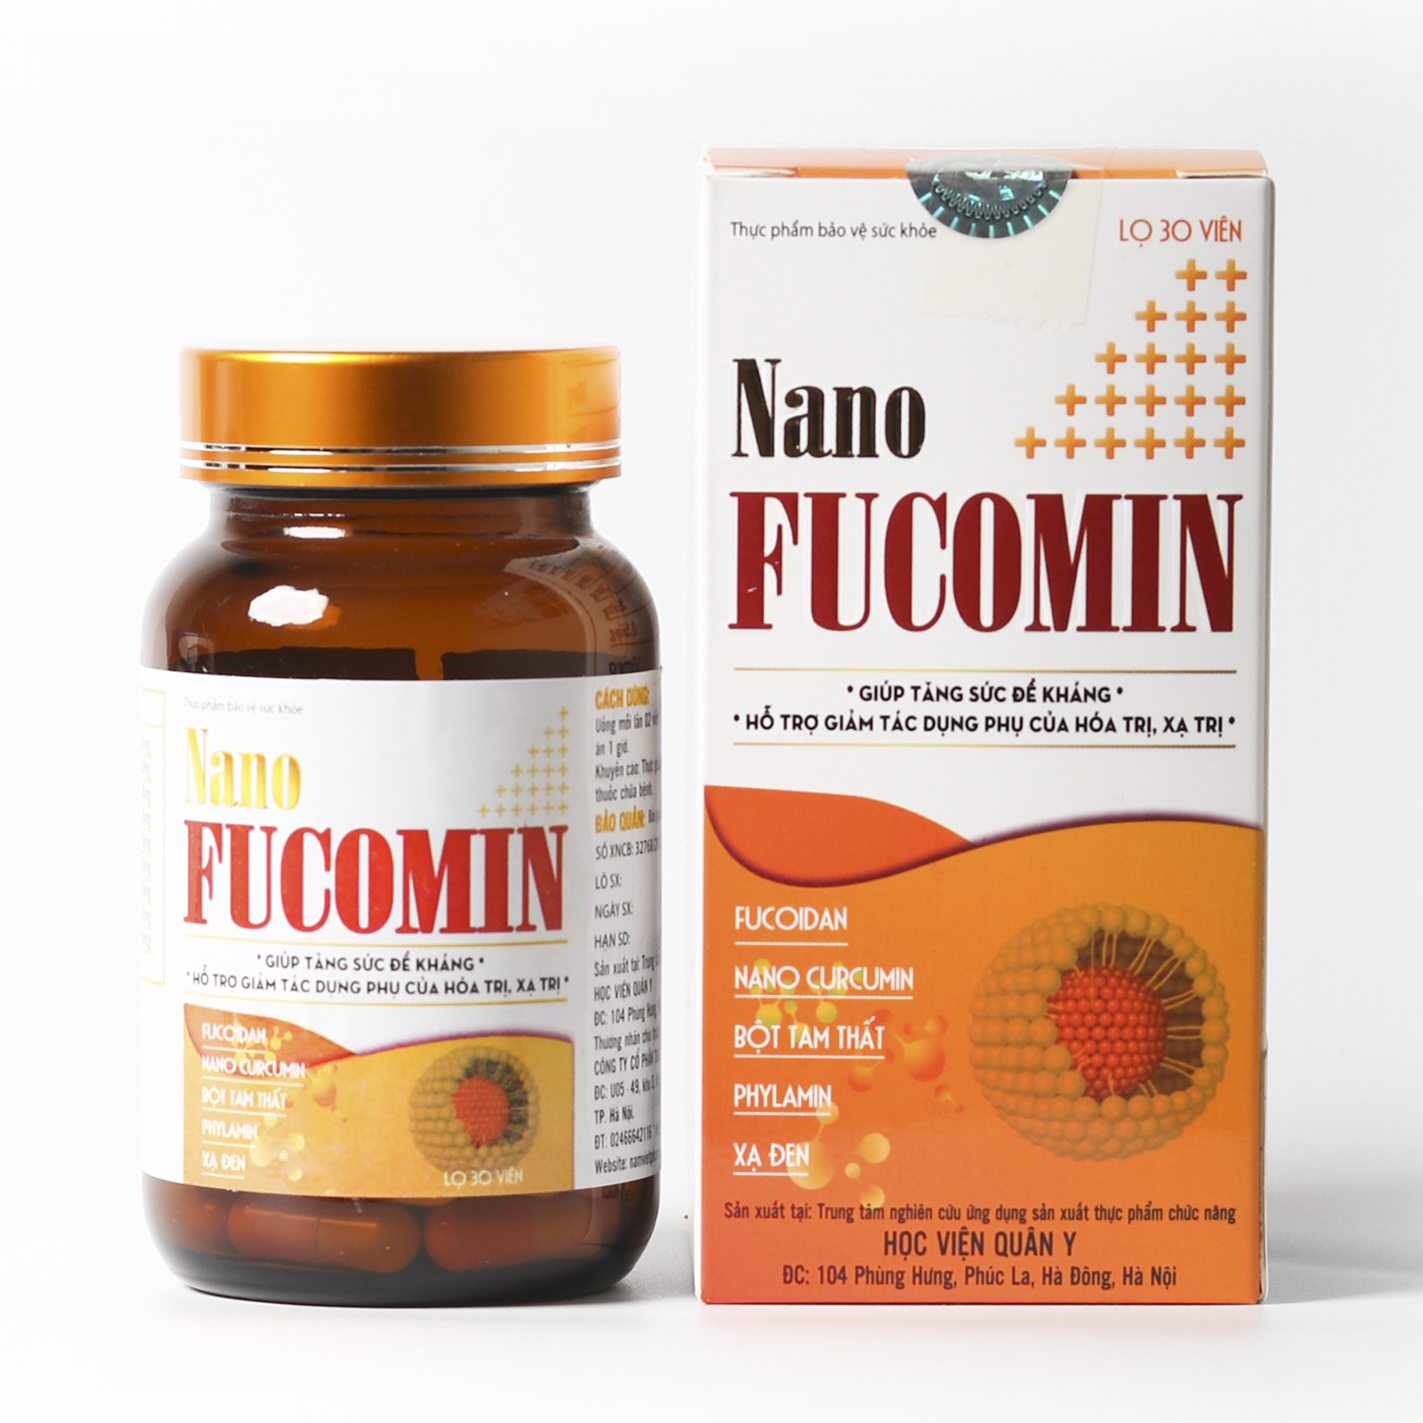 NANO FUCOMIN - Chế phẩm hỗ trợ ung bướu hàng đầu